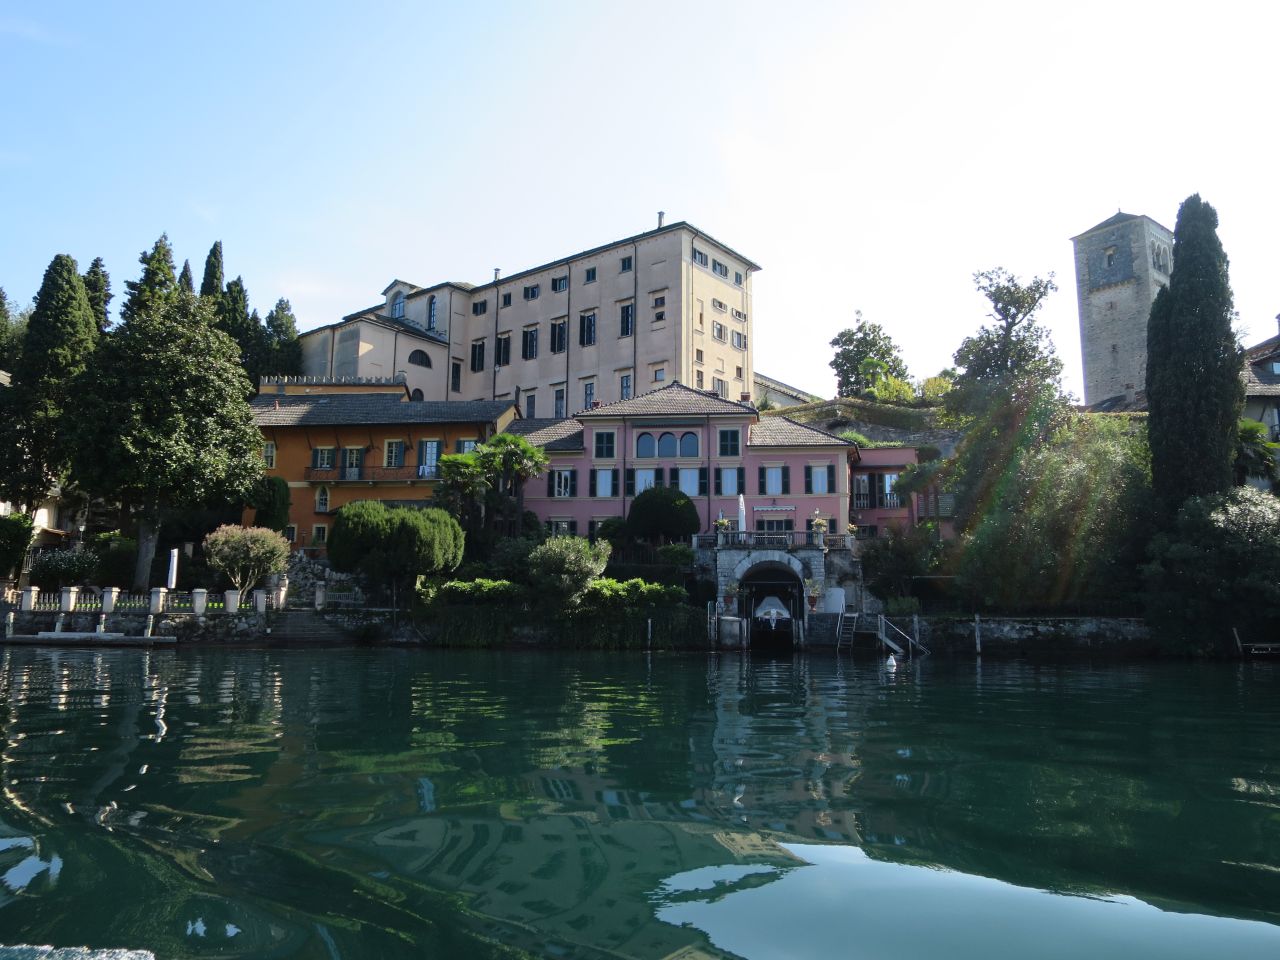 Villa Scheidins, già Cusani-Visconti (casa, nobiliare) - Orta San Giulio (NO)  (XIX, prima metà; XX)